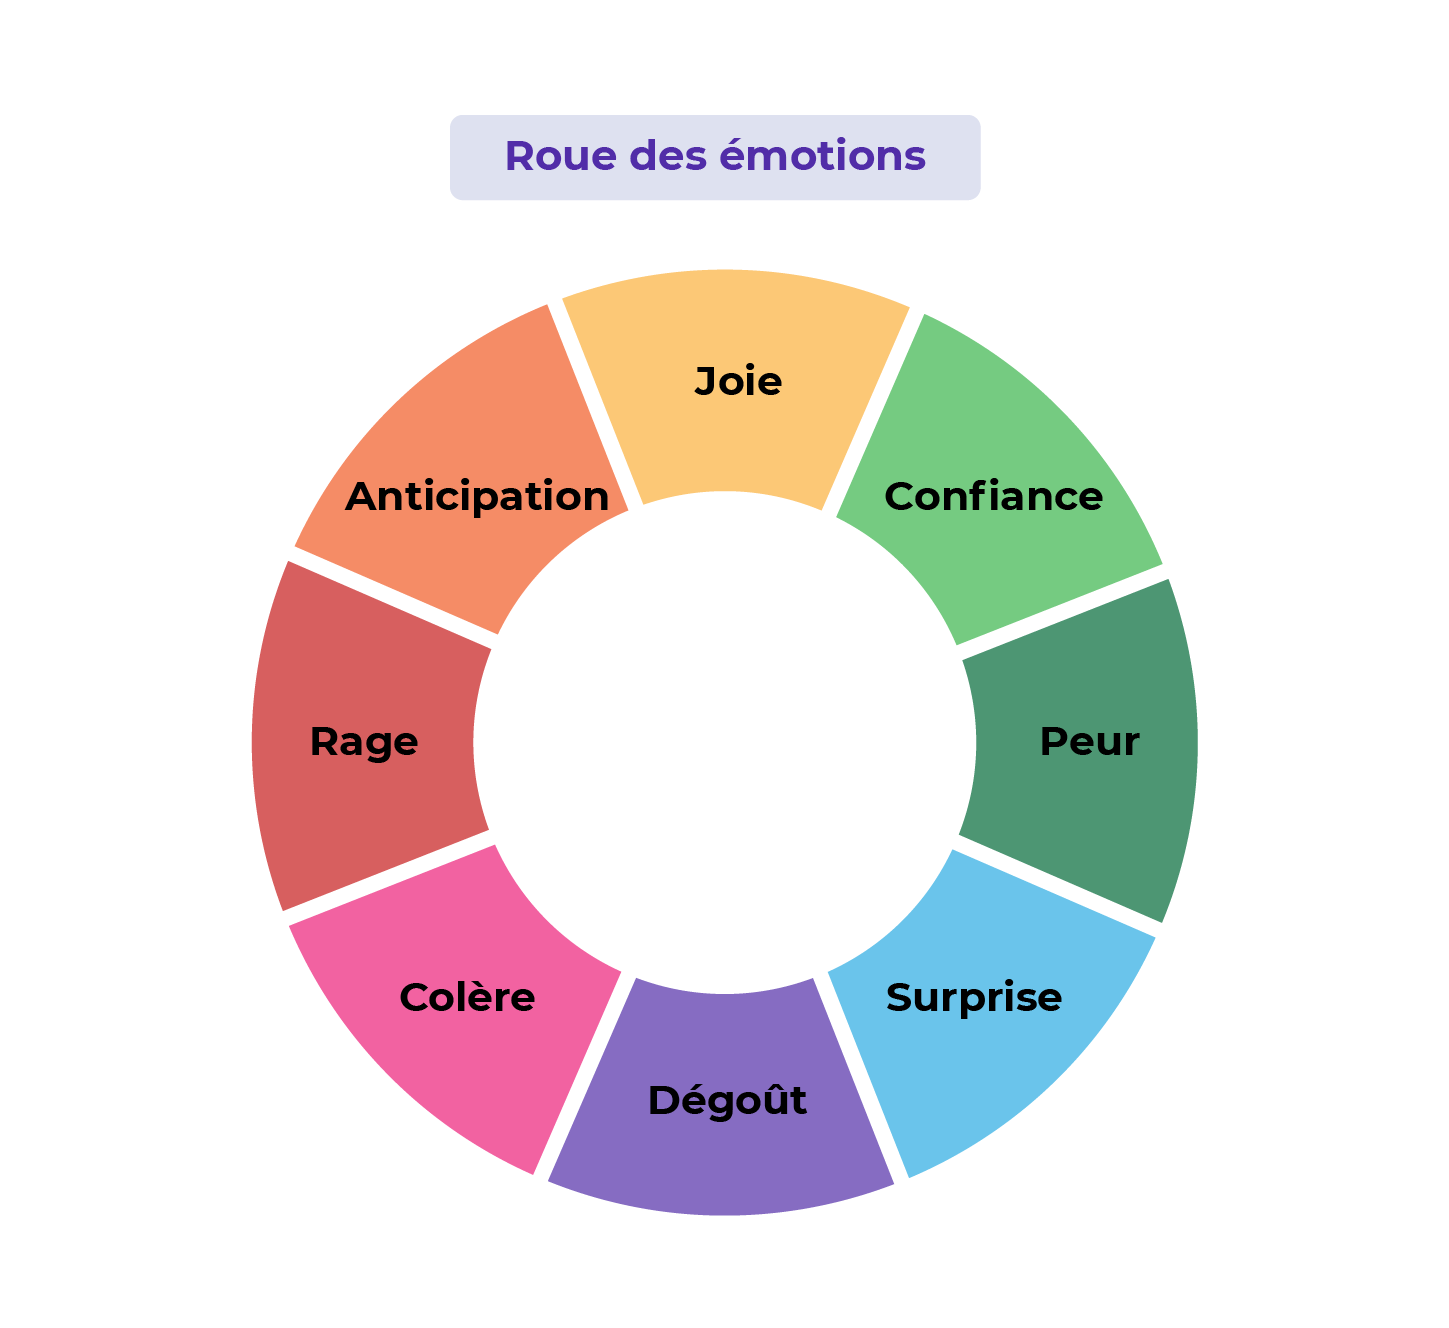 La roue des émotions est composée de 8 émotions : la peur, la colère, la joie, la tristesse, le dégoût, la surprise, l'attente heureuse et la confiance.